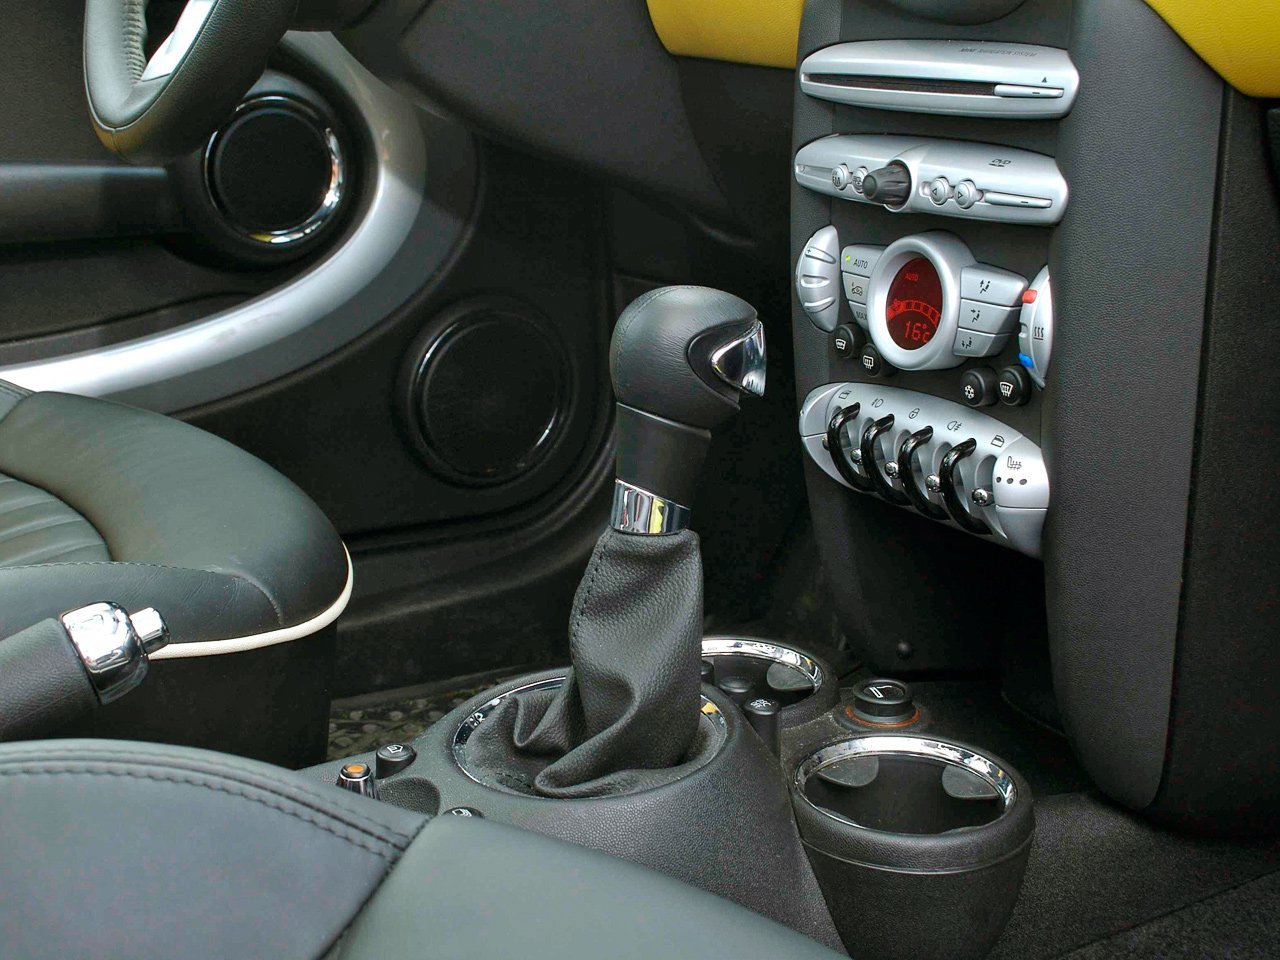 хэтчбек 3 дв. MINI Hatch 2006 - 2010г выпуска модификация 1.6 AT (109 л.с.)